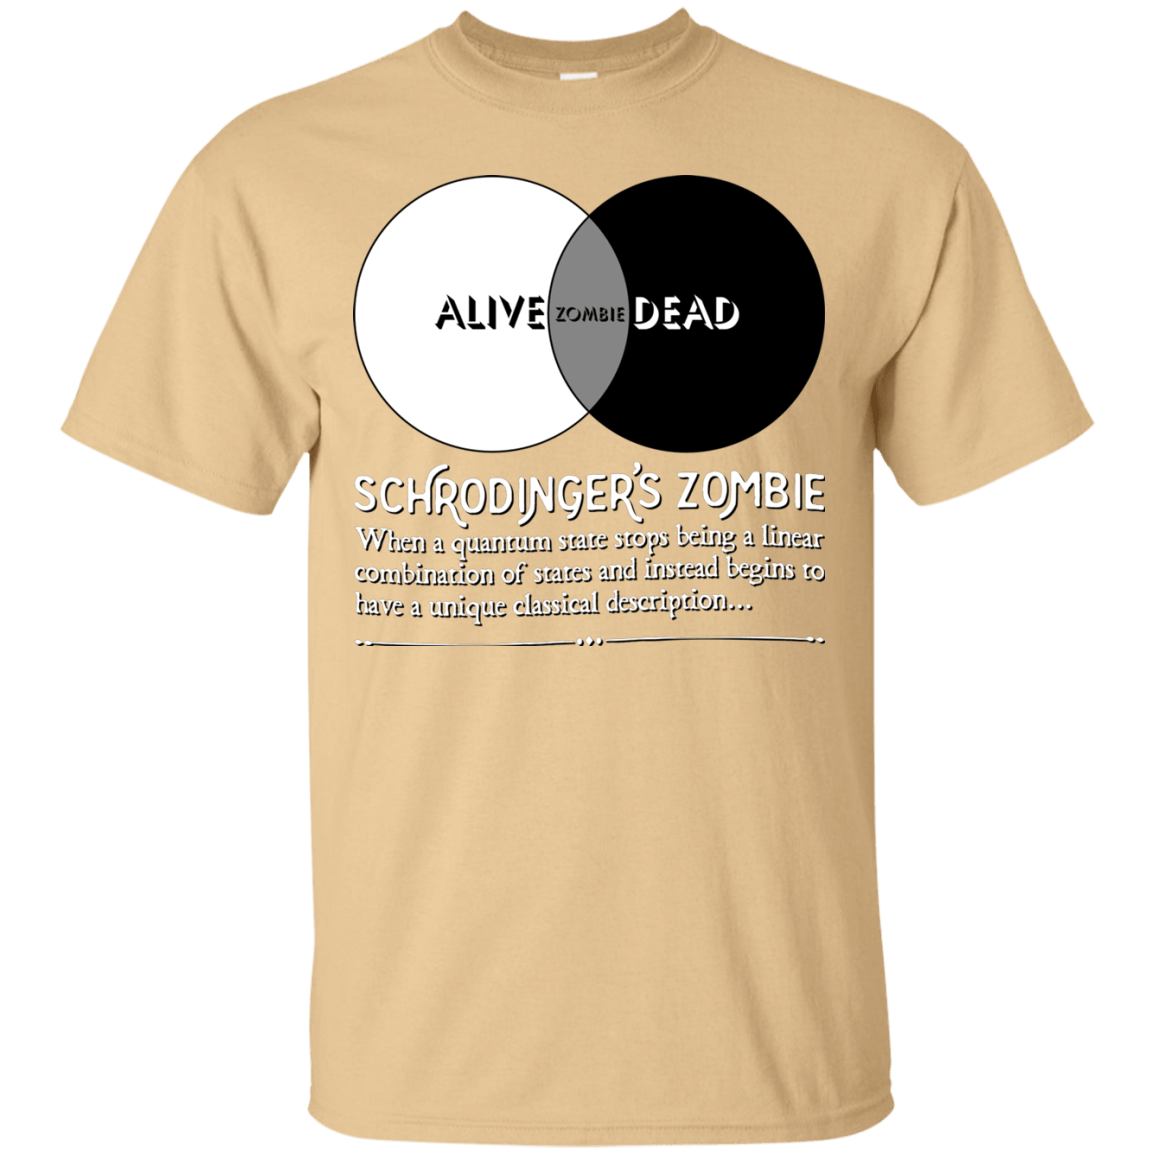 T-Shirts Vegas Gold / Small Schrödinger's Zombie T-Shirt